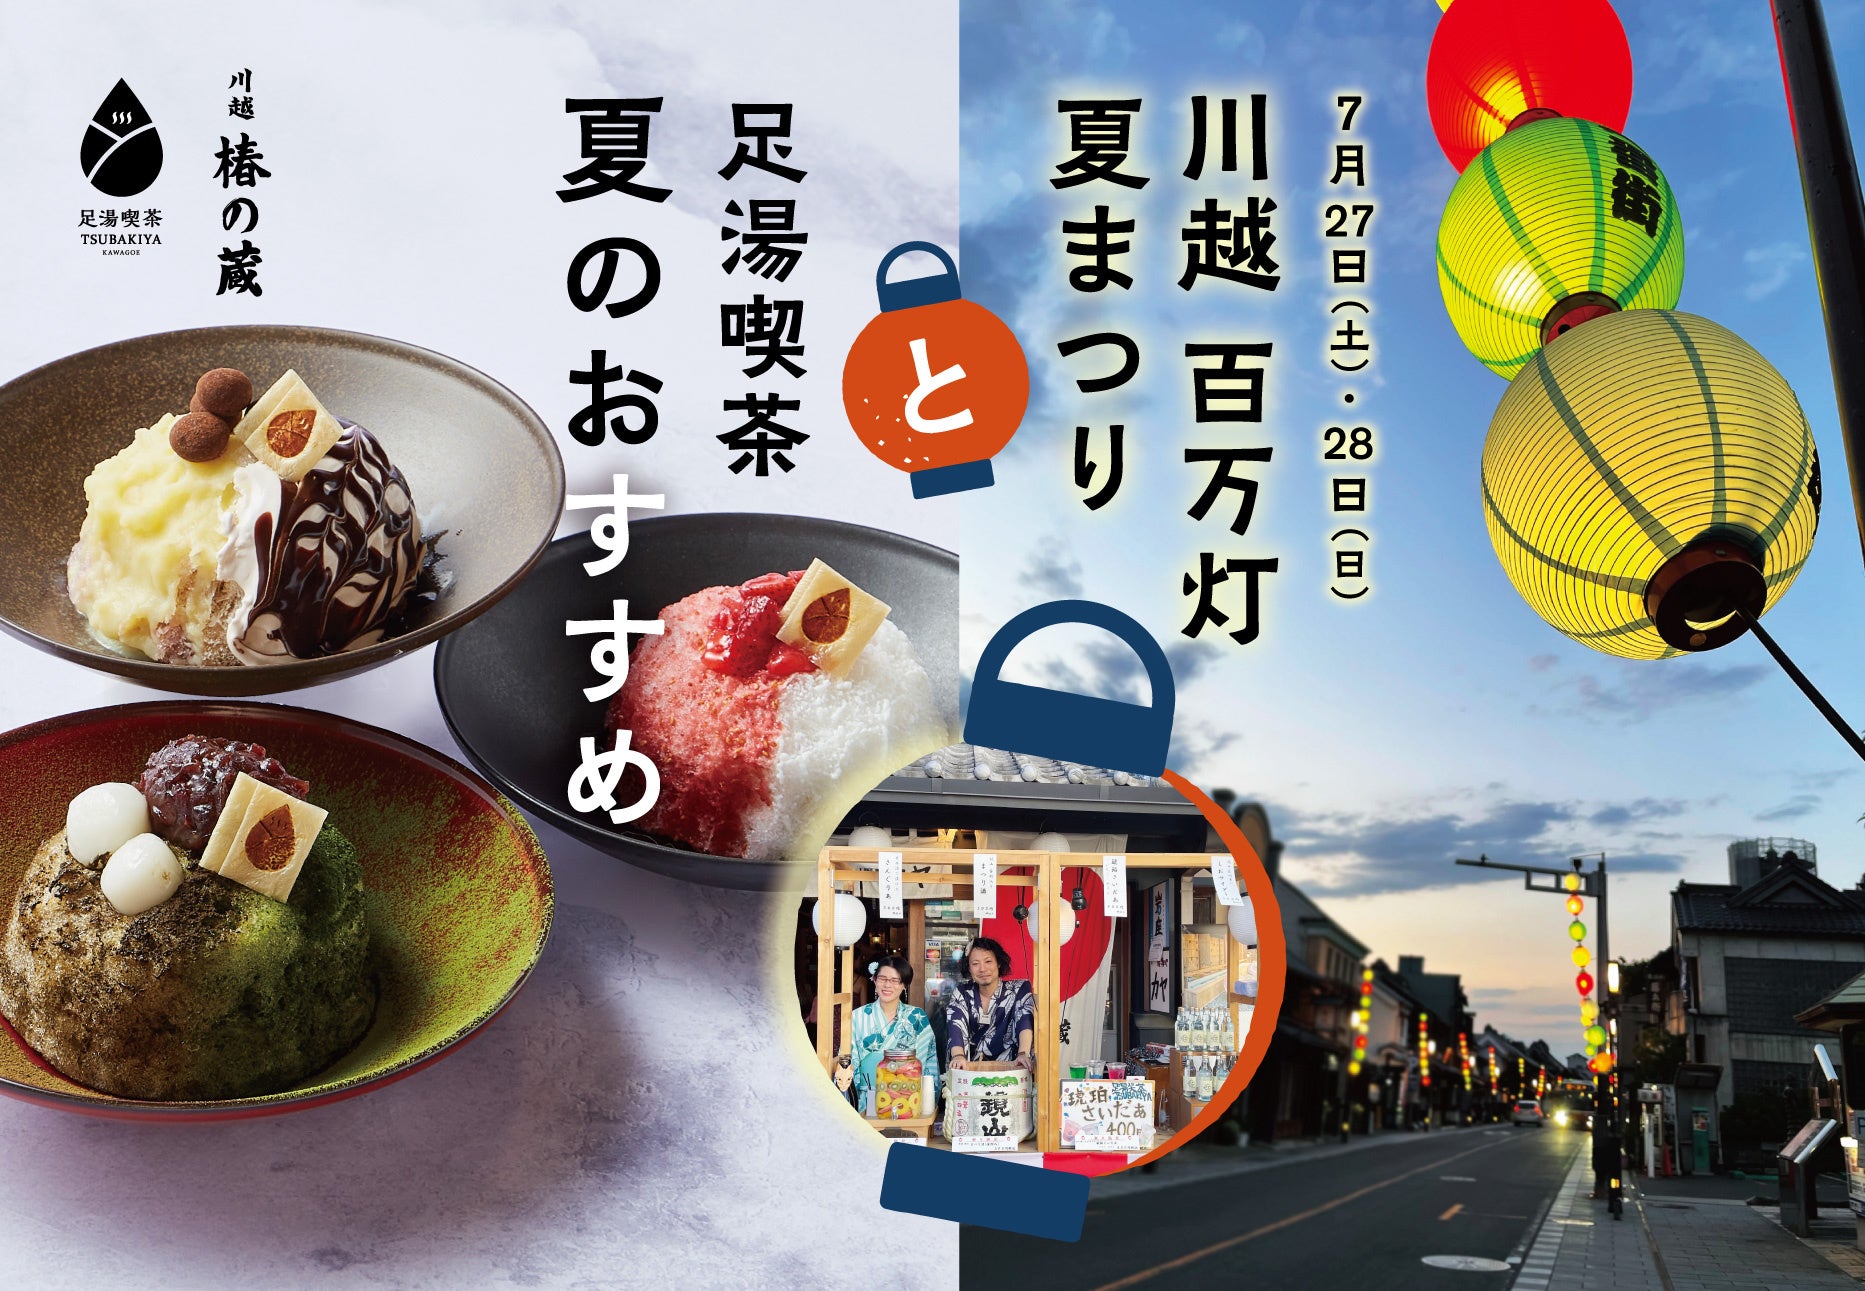 和と洋が融合した新たなスイーツ「IMAGAWA SAND」の専門店「IMAGAWA SAND 東京」を7月12日に下北沢で初出店